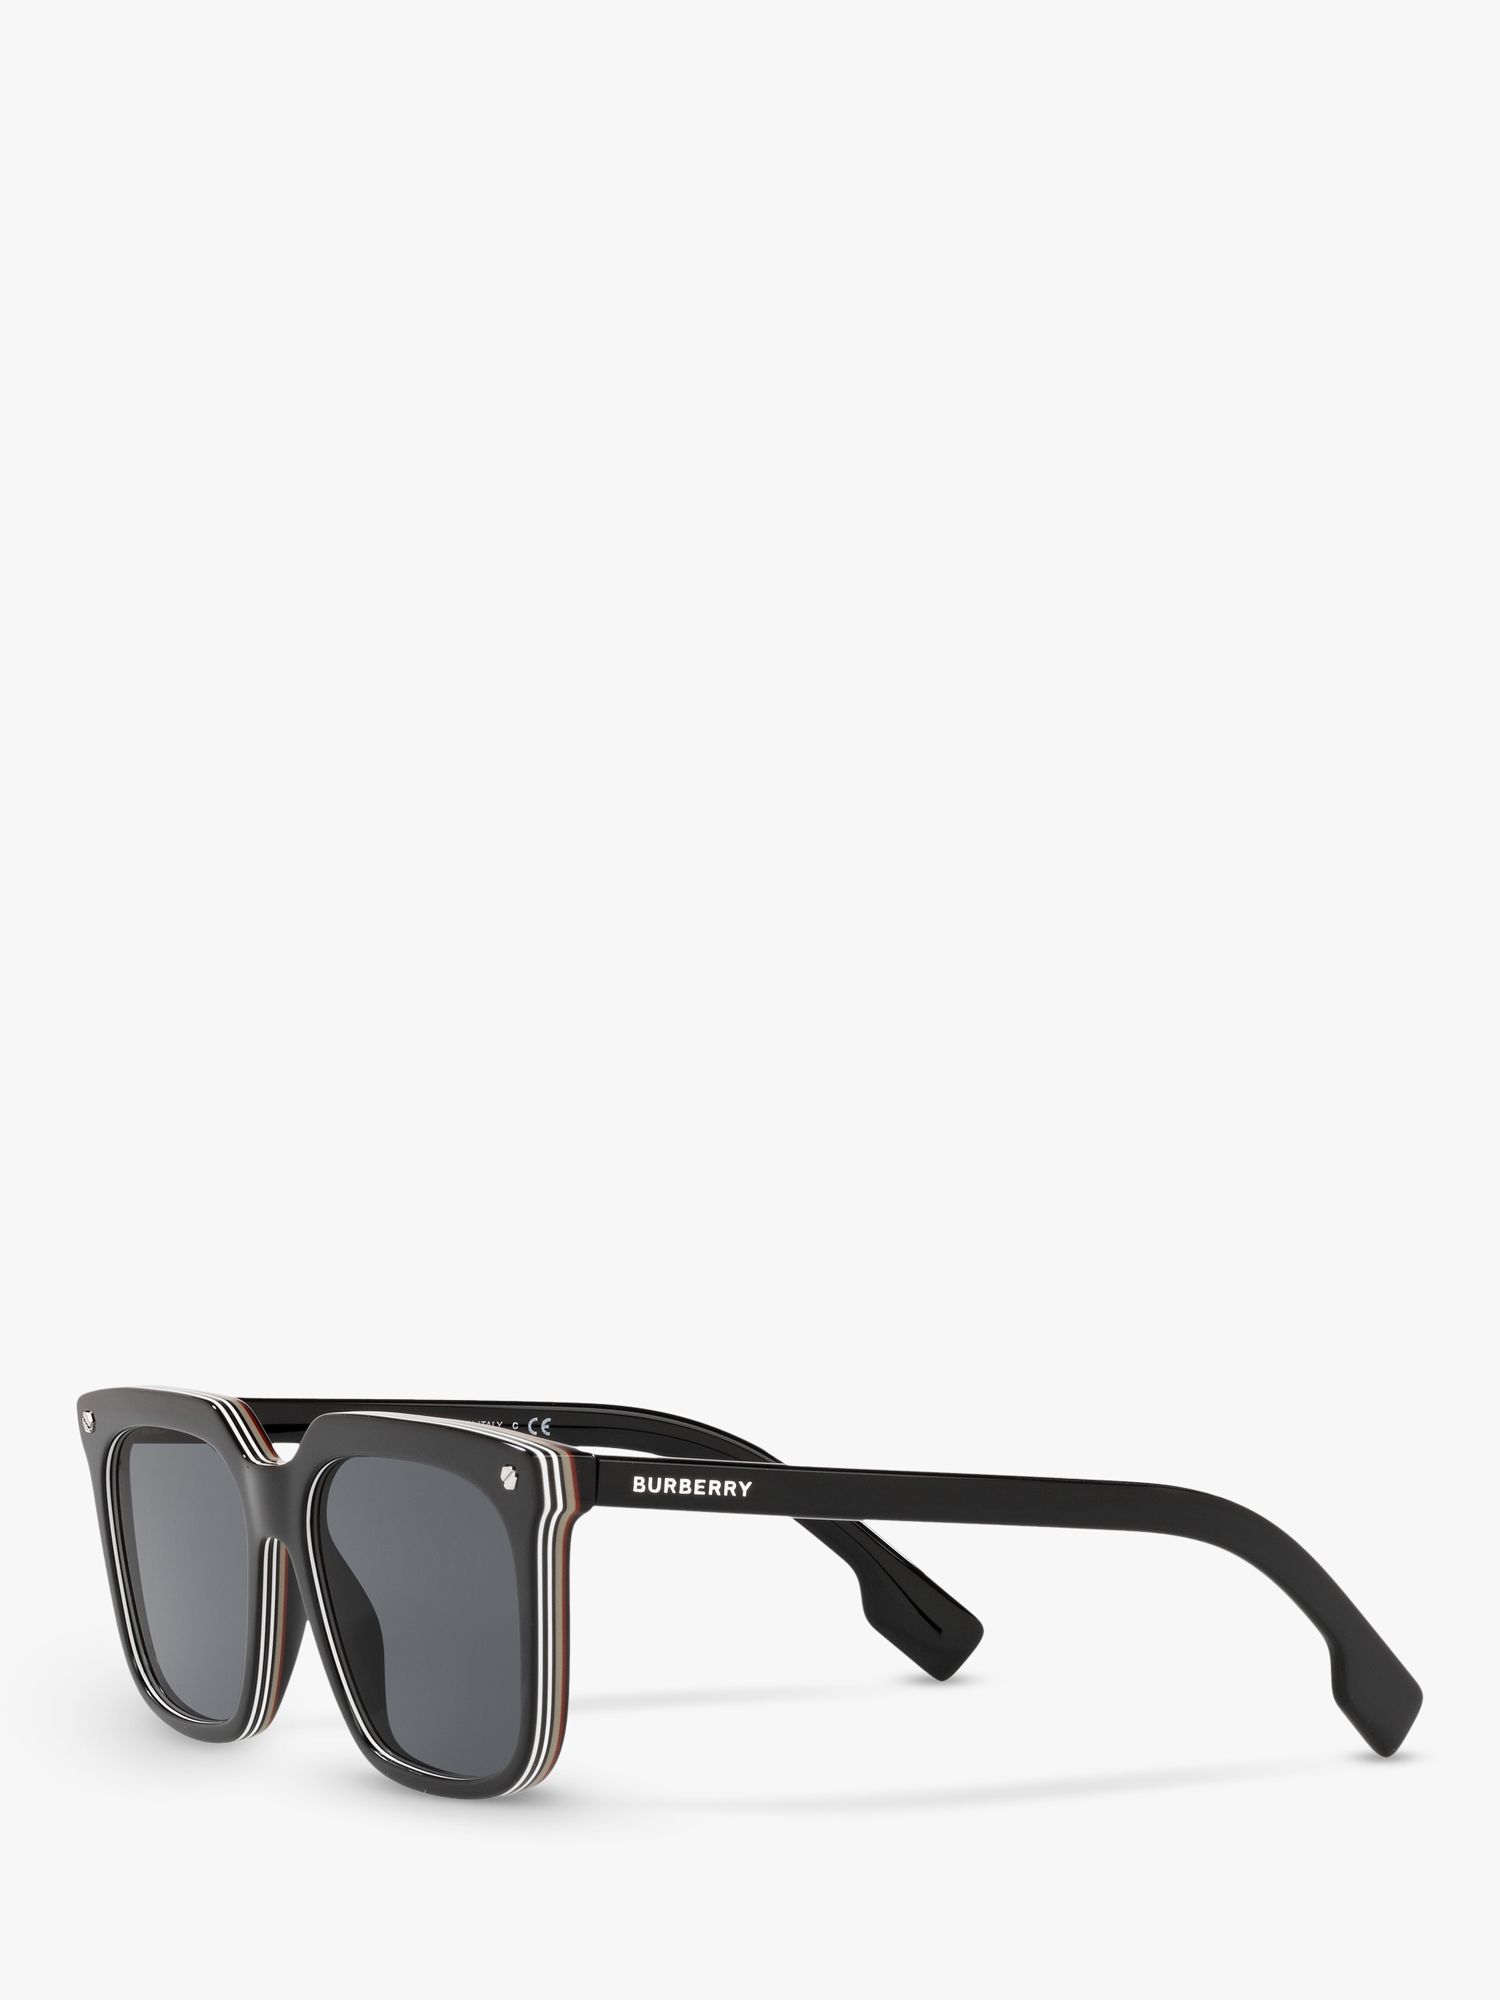 Burberry BE4337 Men's Square Sunglasses, Black at John Lewis & Partners